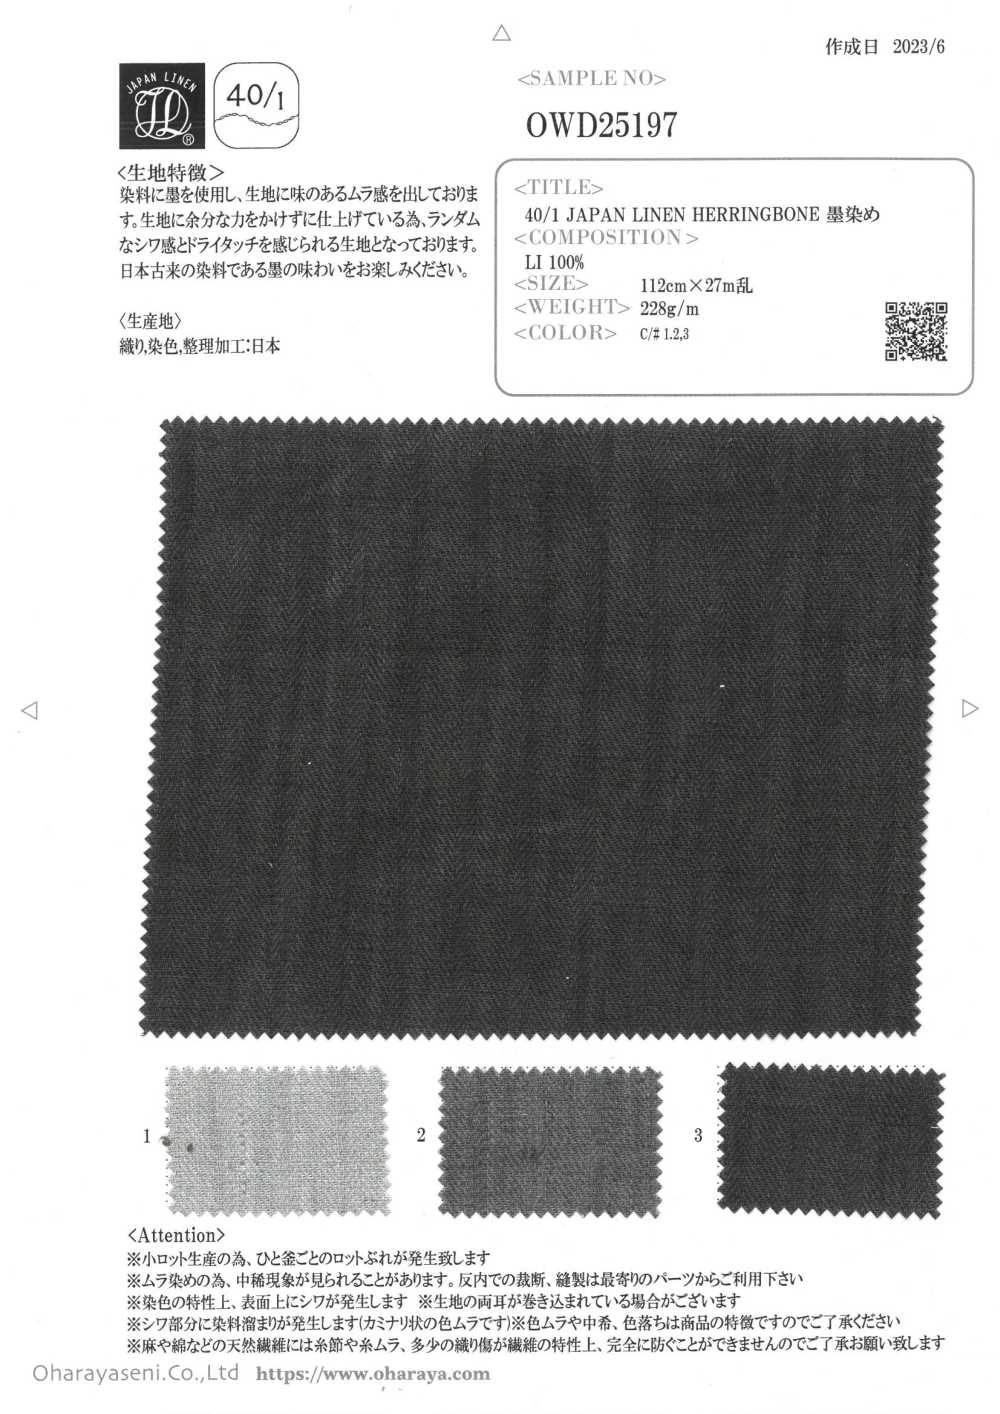 OWD25197 40/1 ESPIGA DE LINO JAPÓN Sumi-teñido[Fabrica Textil] Oharayaseni